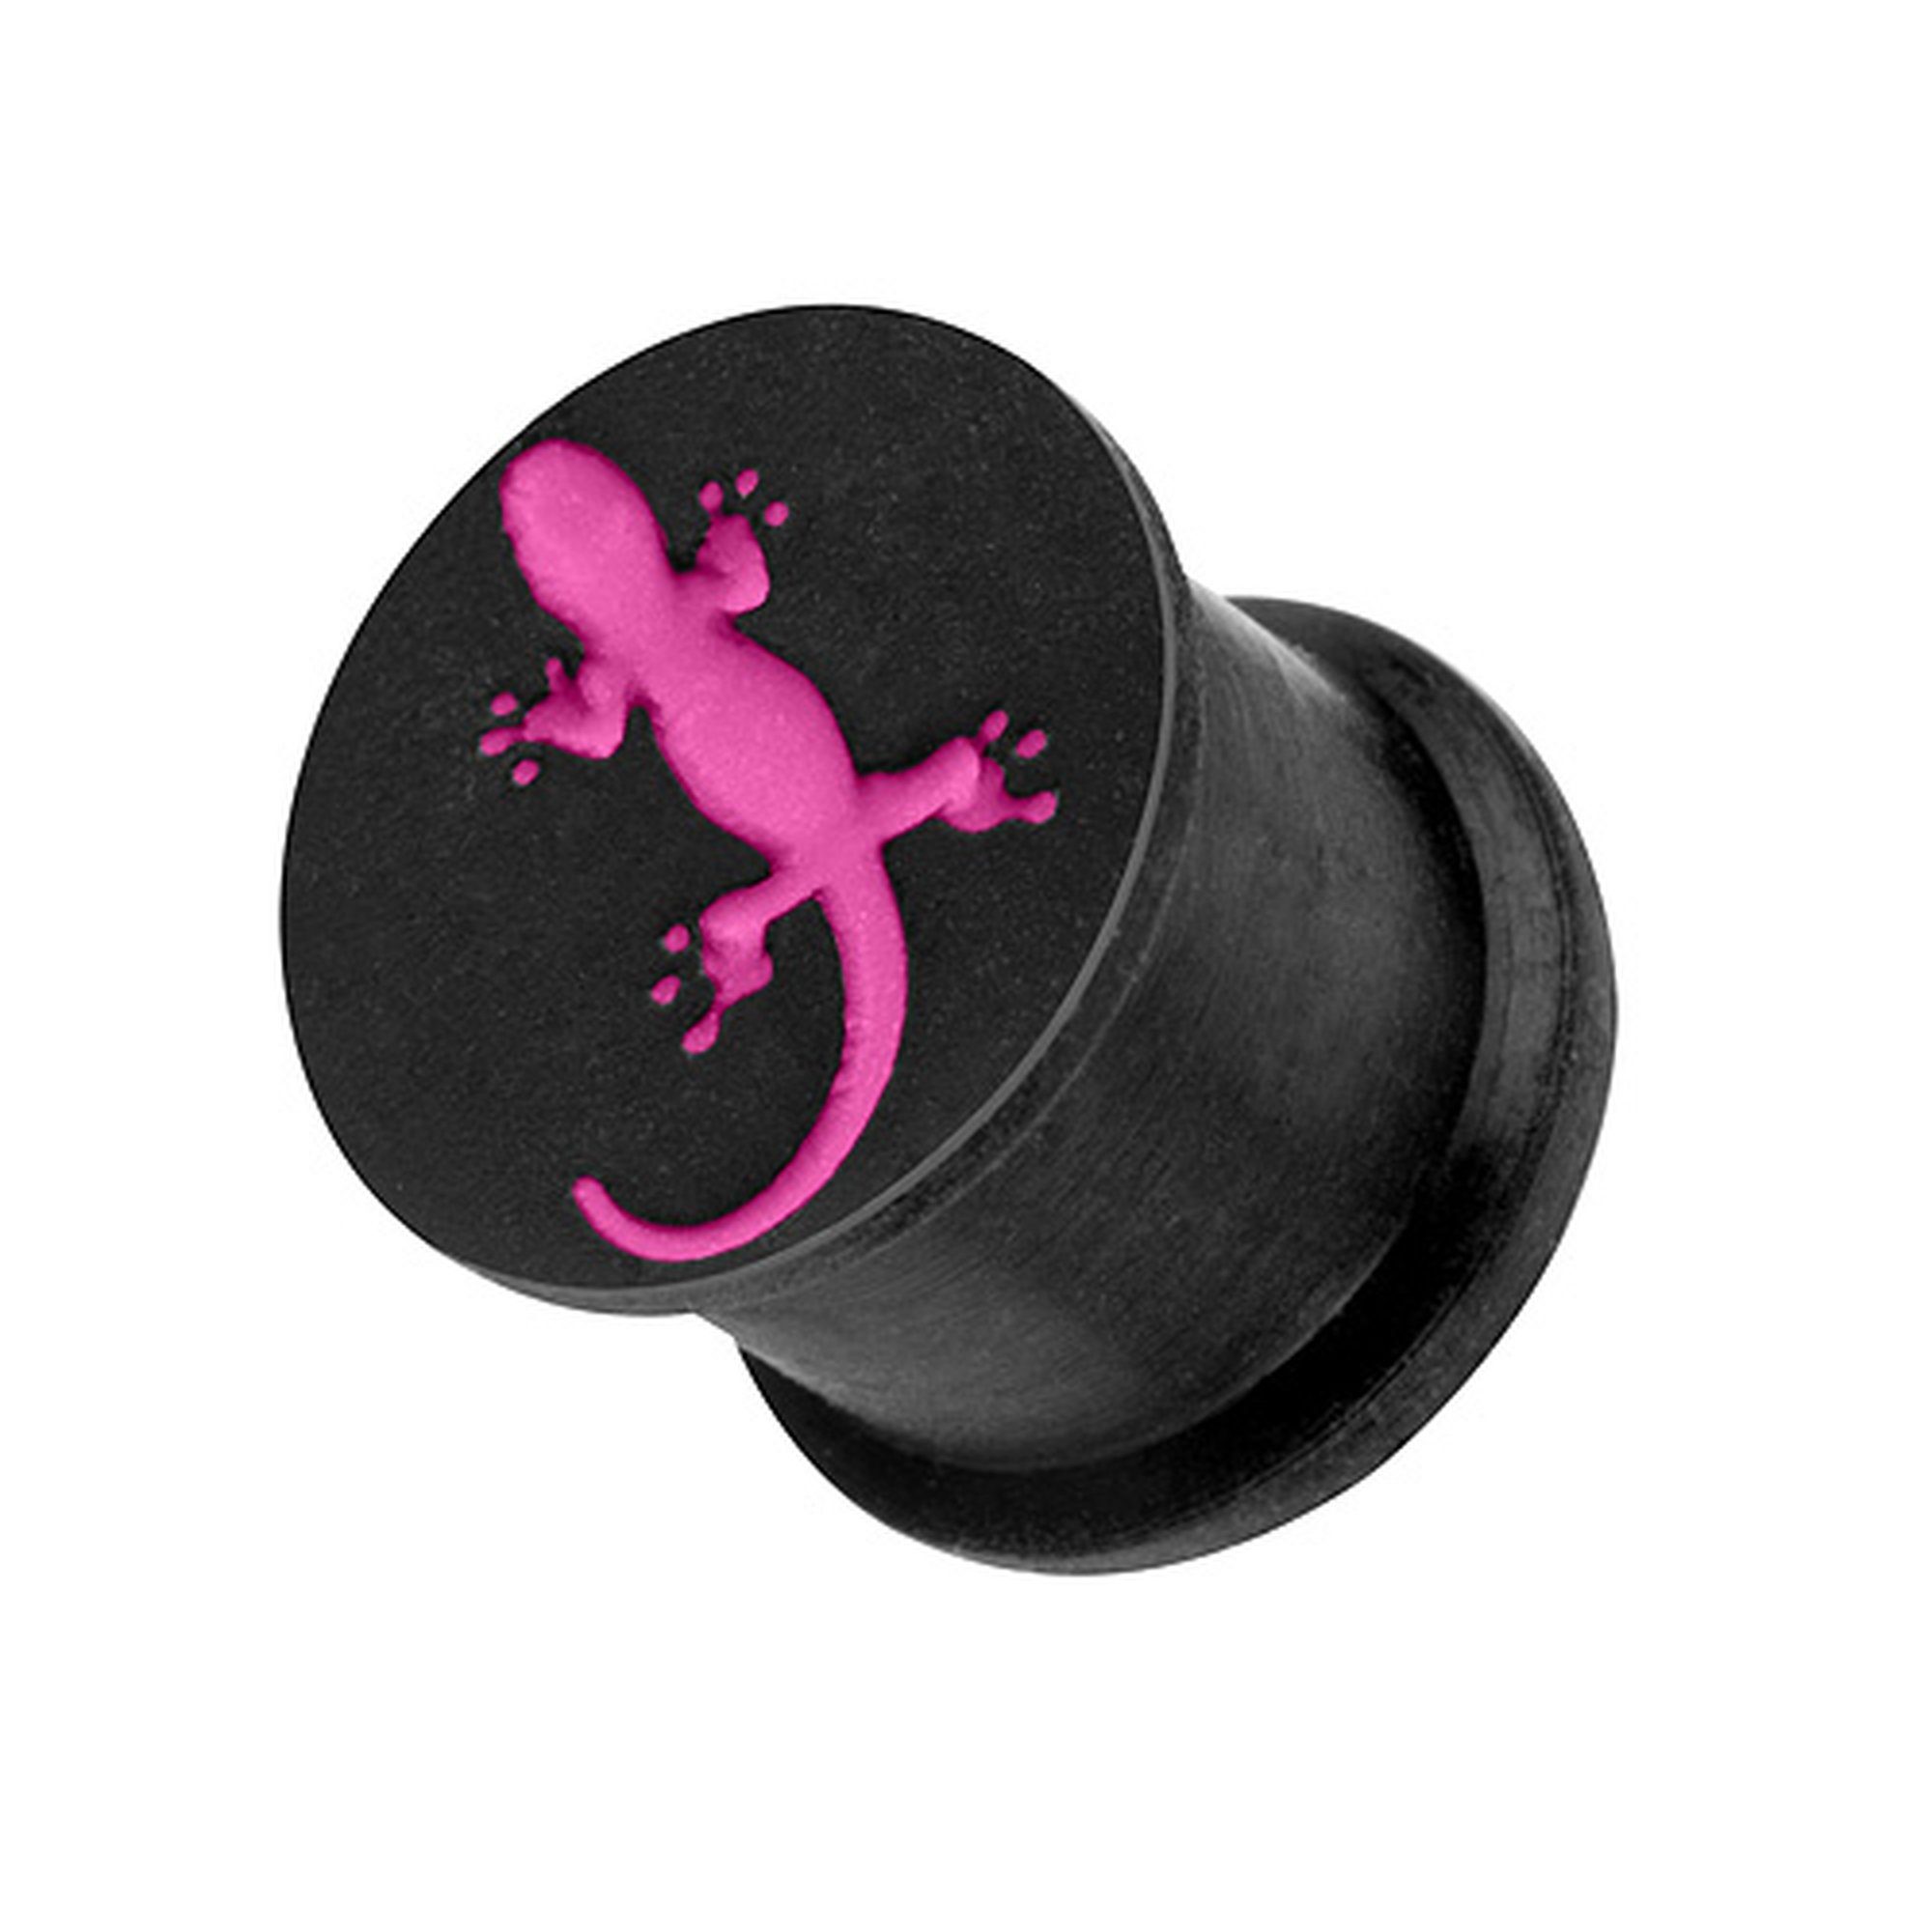 3D Flesh Tunnel Plug Ohrpiercing Silikon Taffstyle Piercing in Piercing verschiedenen Ohr Ohr Farben Plug 3D Plug Ohrpiercing Pink Eidechse,